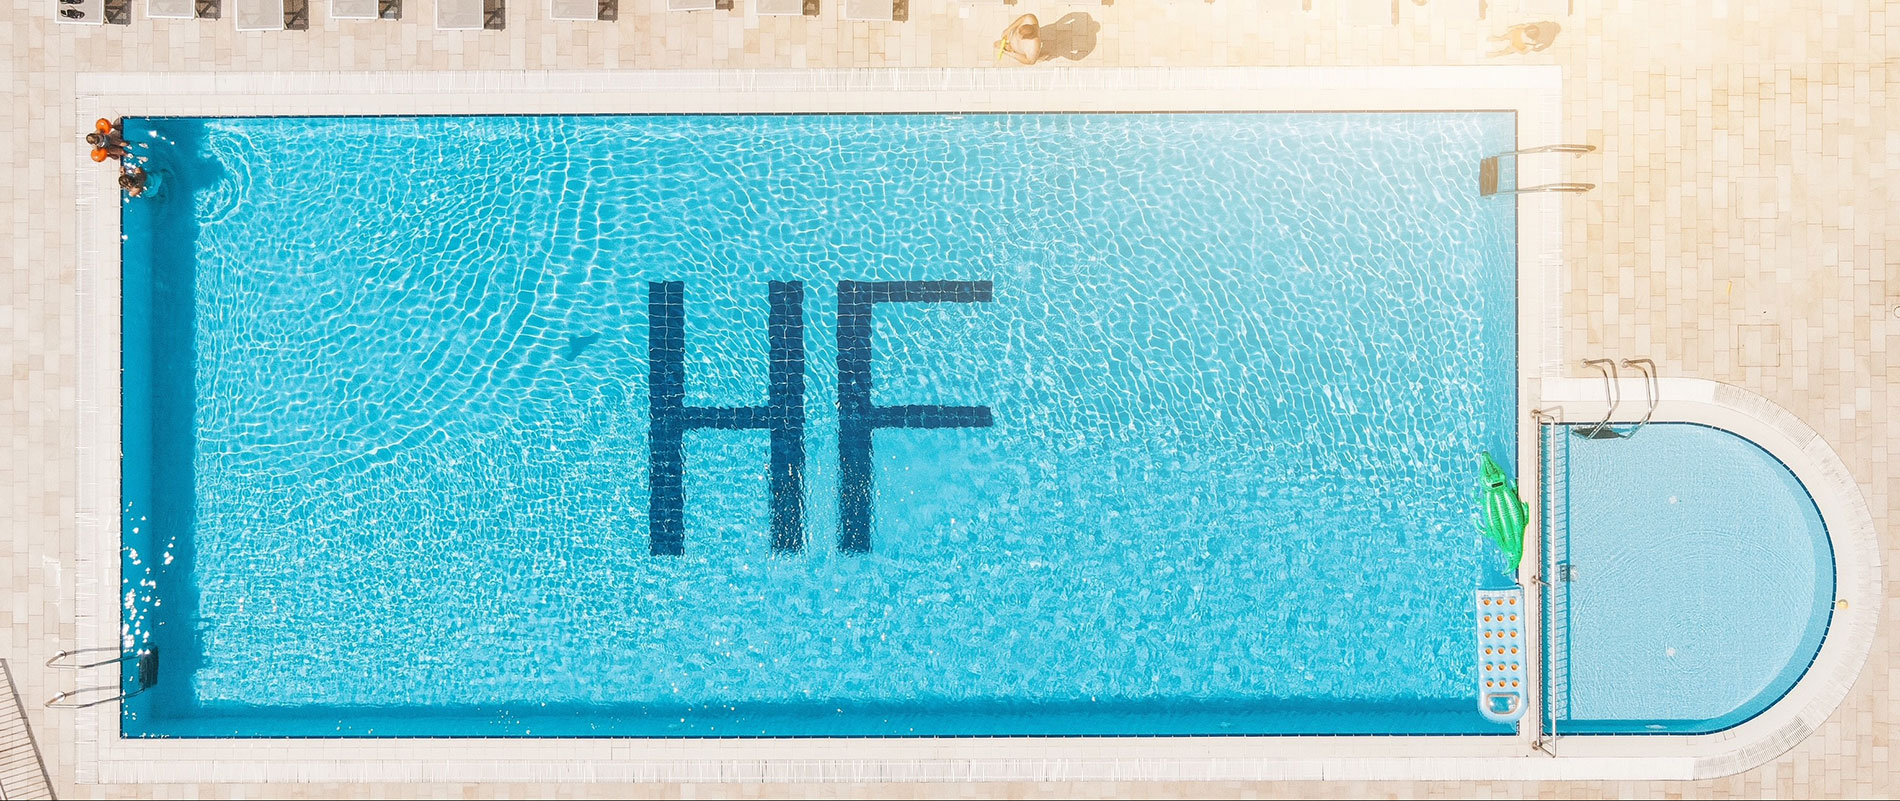 Hotel Fenix : Albergo con piscina fronte mare : Cavallino - Venezia